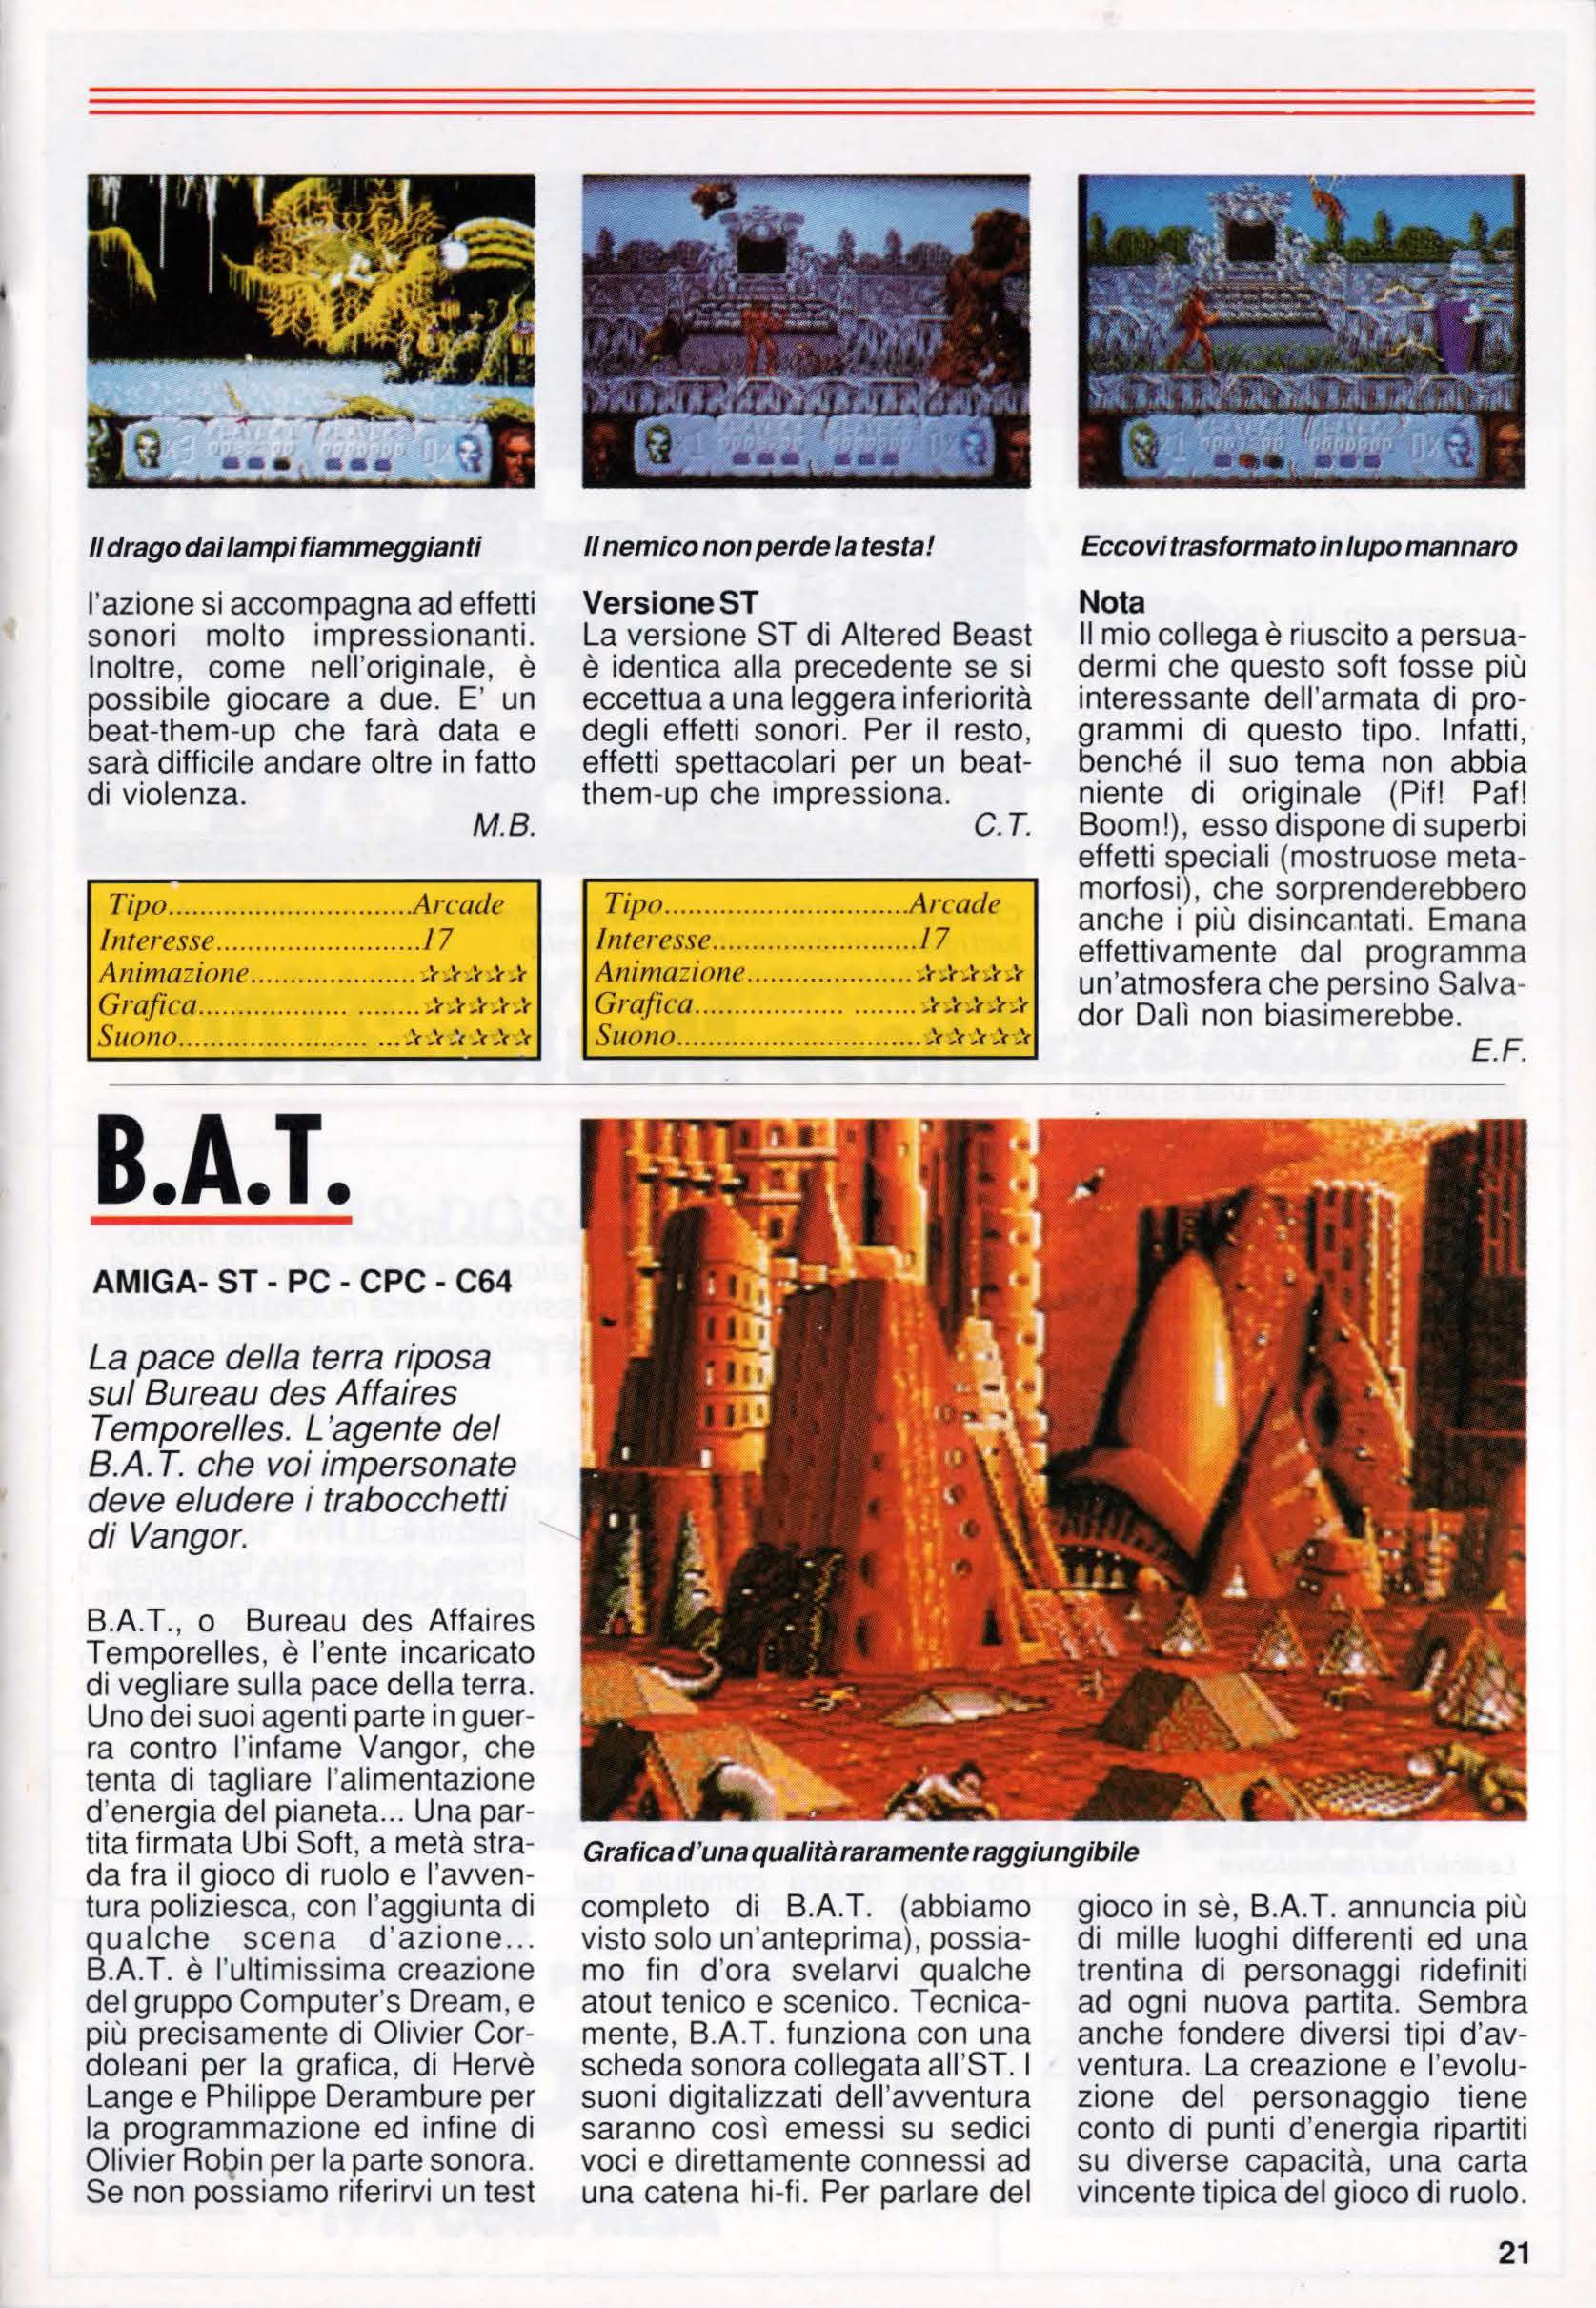 guida_video_giochi_9_mar_1990_-_pag.21.jpg